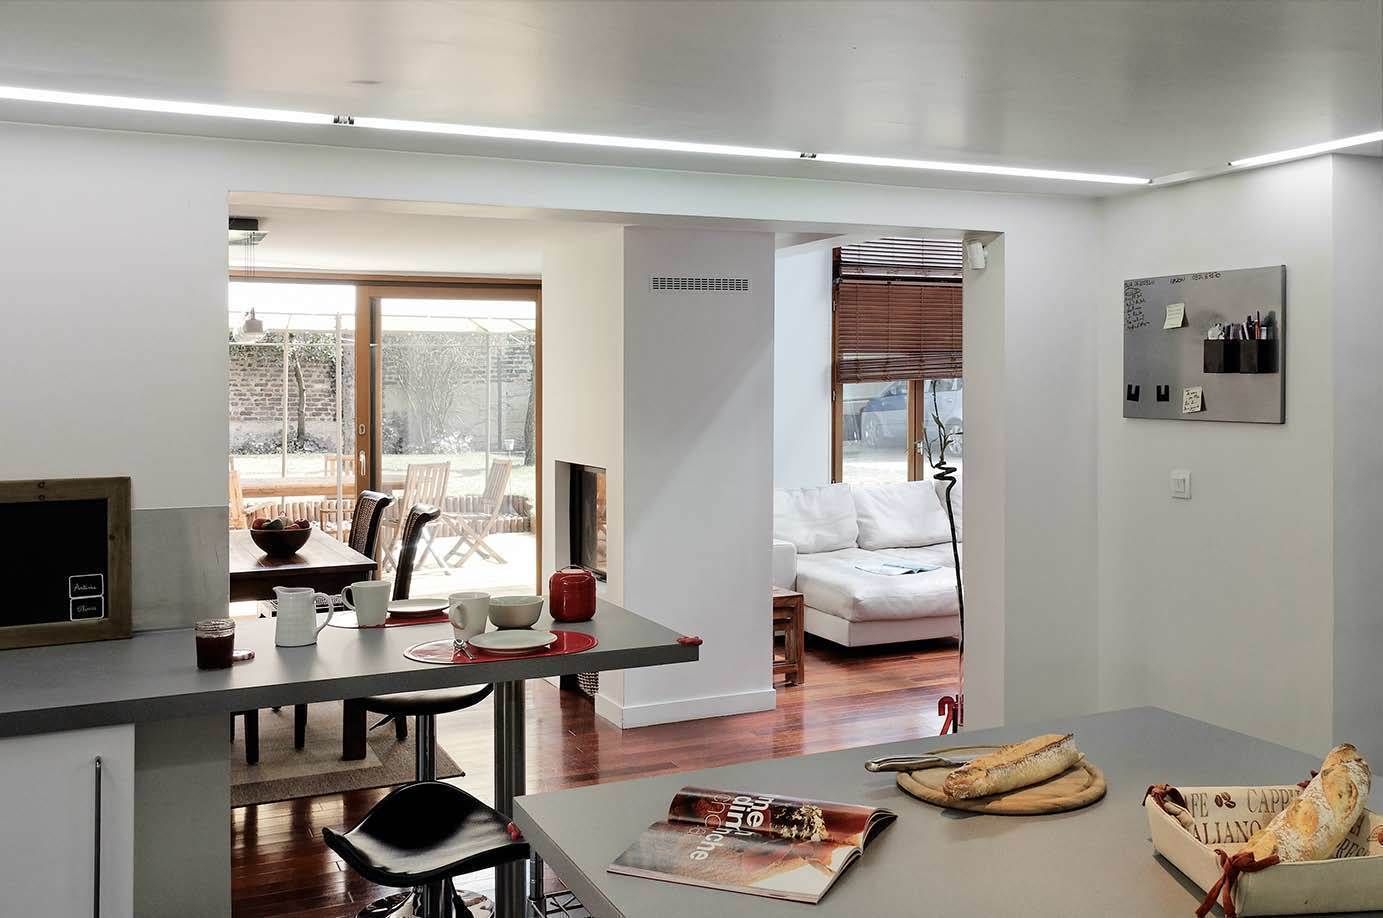 Réfection complète d’une maison à Colombes + extension, 170m² , ATELIER FB ATELIER FB Modern kitchen